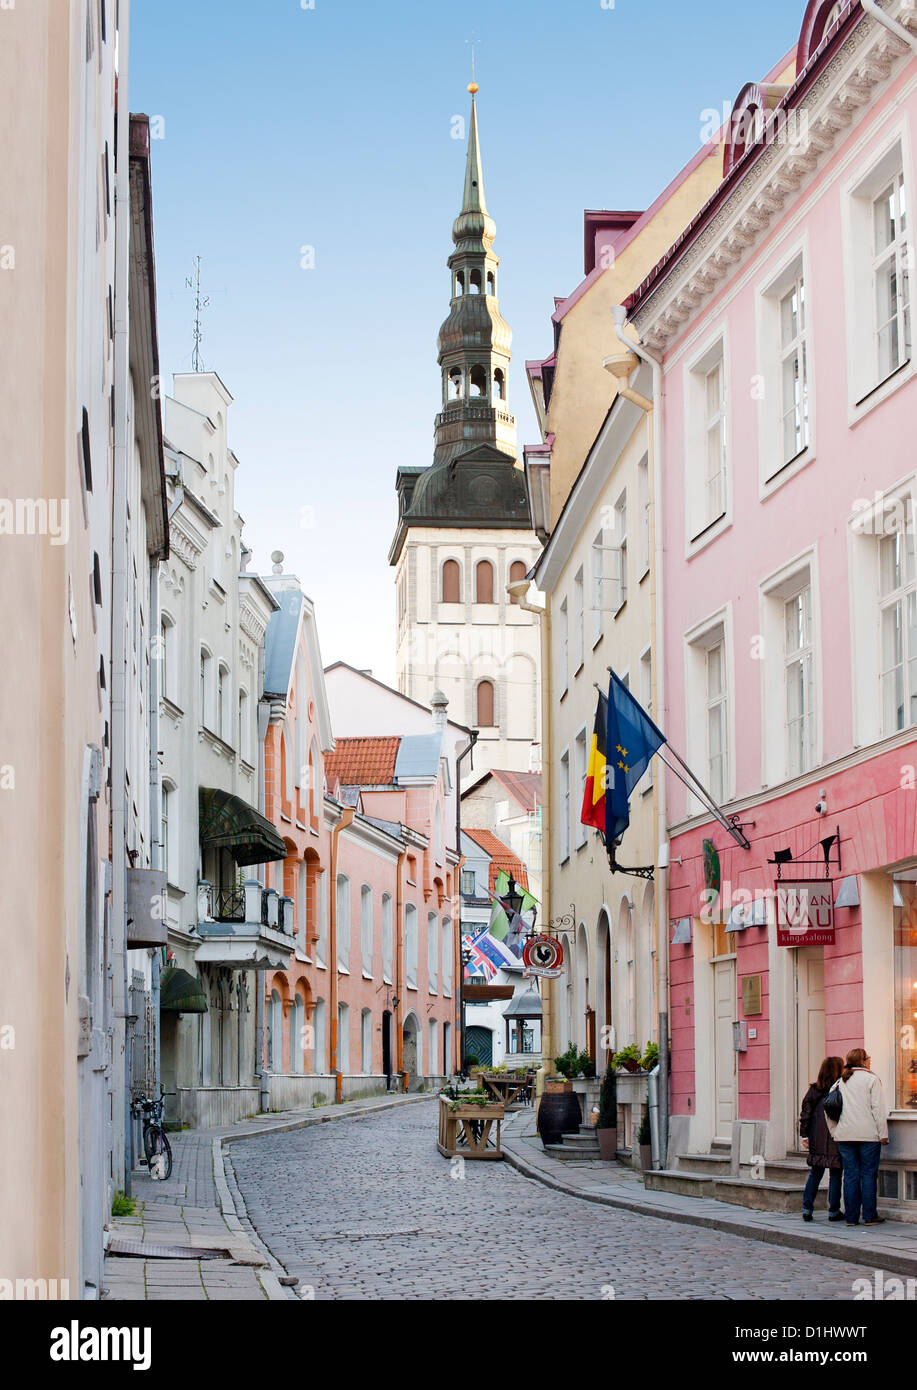 Vista del campanario de la Iglesia de San Nicolás en una calle de la ciudad vieja de Tallin, la capital de Estonia. Foto de stock